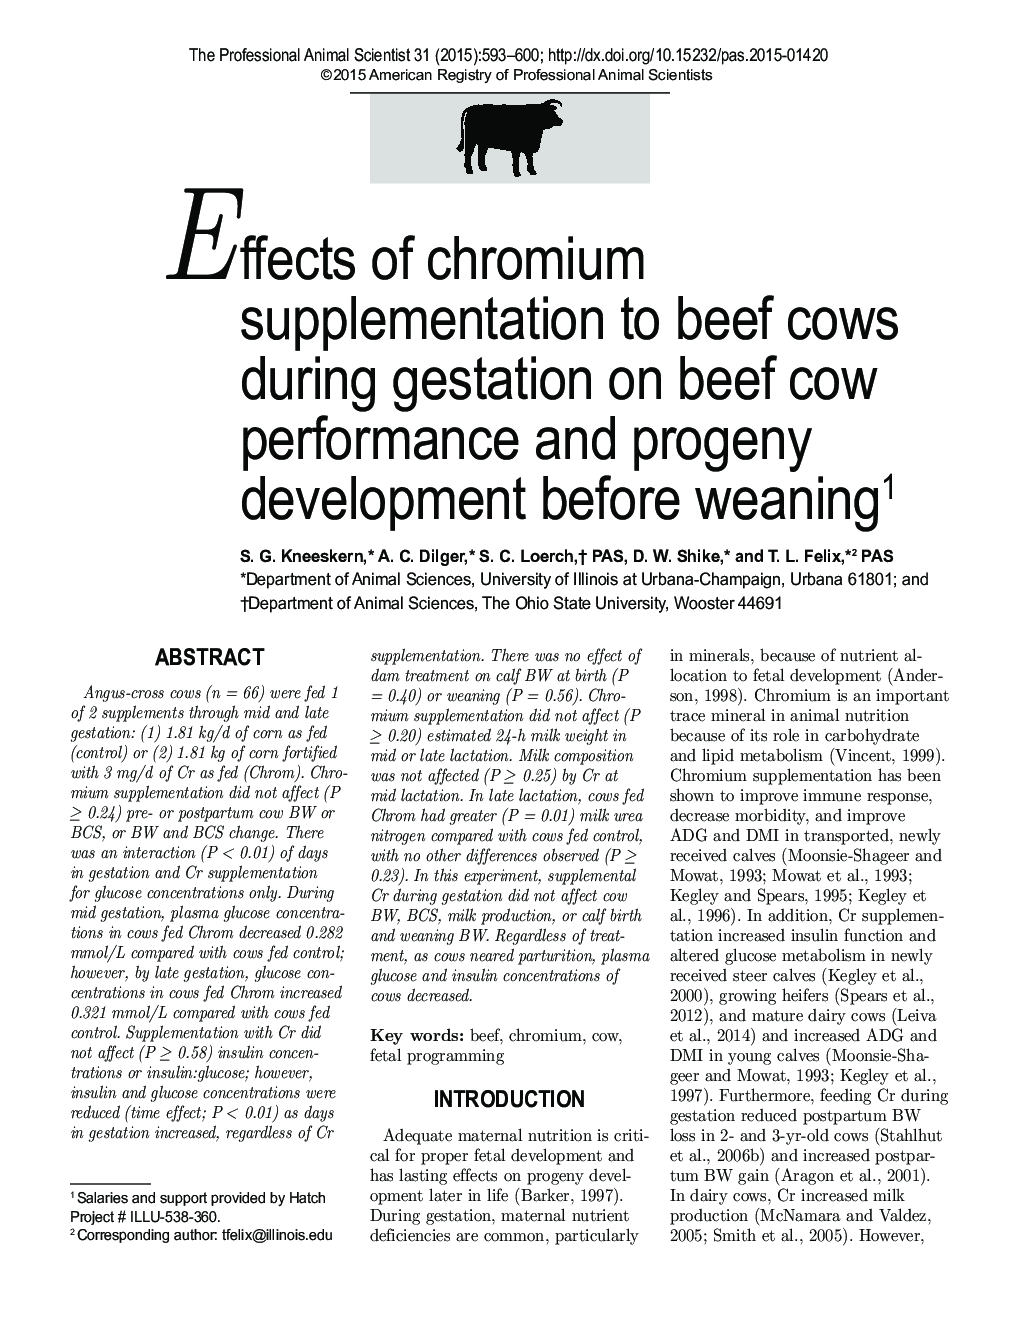 تأثیر مکمل کروم بر گاوهای گوشت گاو در حین بارداری بر عملکرد گوساله و رشد پس از زایش 